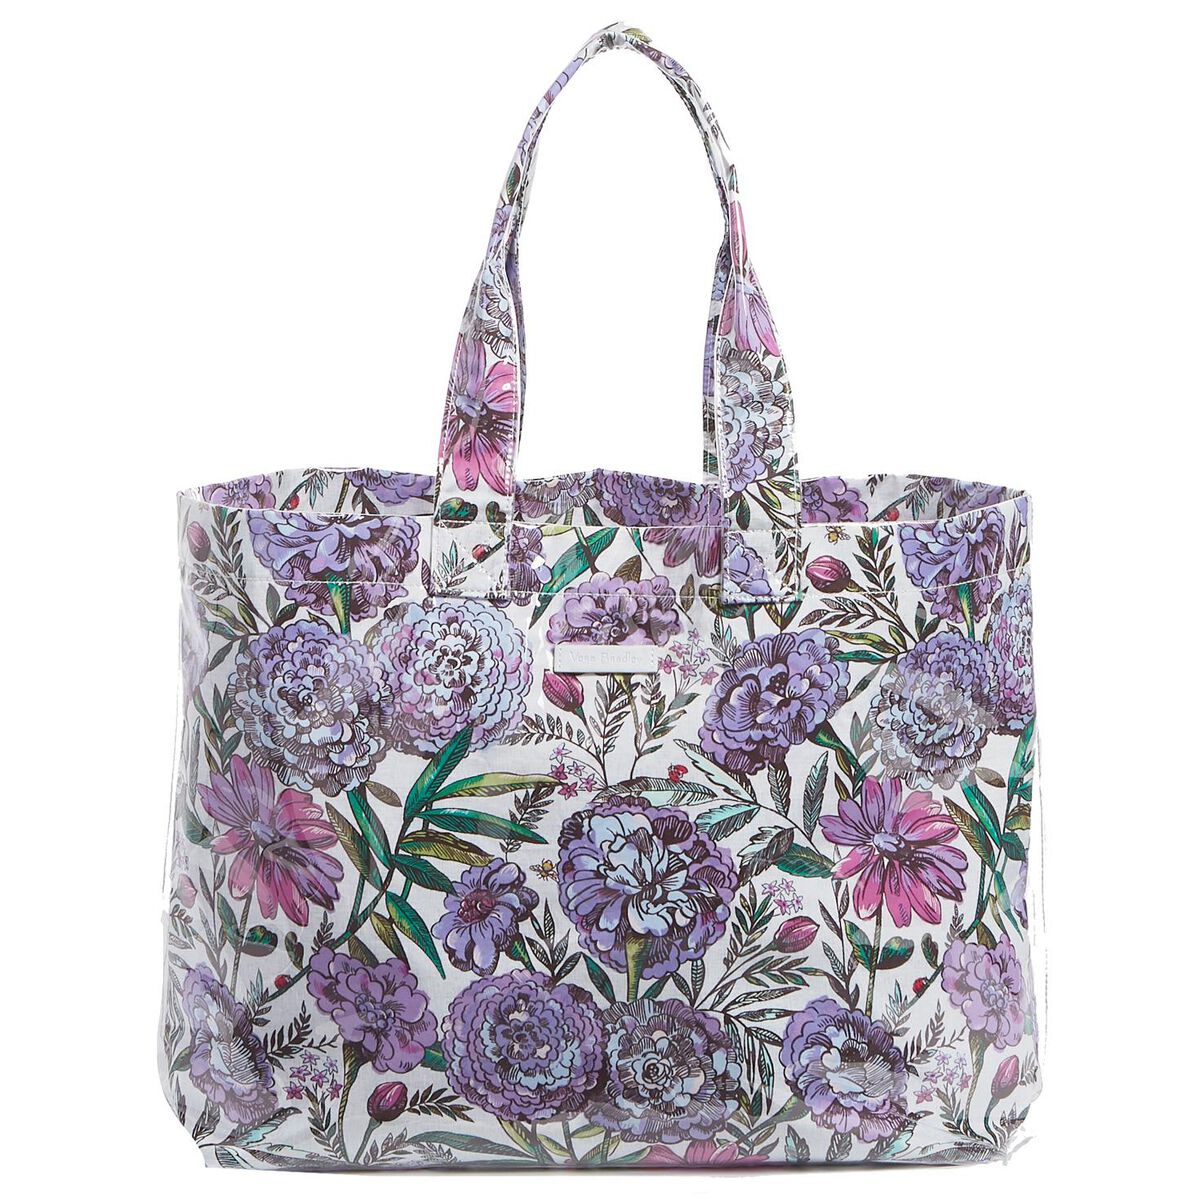 Vera Bradley City Shopper Tote Bag in Lavender Meadow - Handbags ...